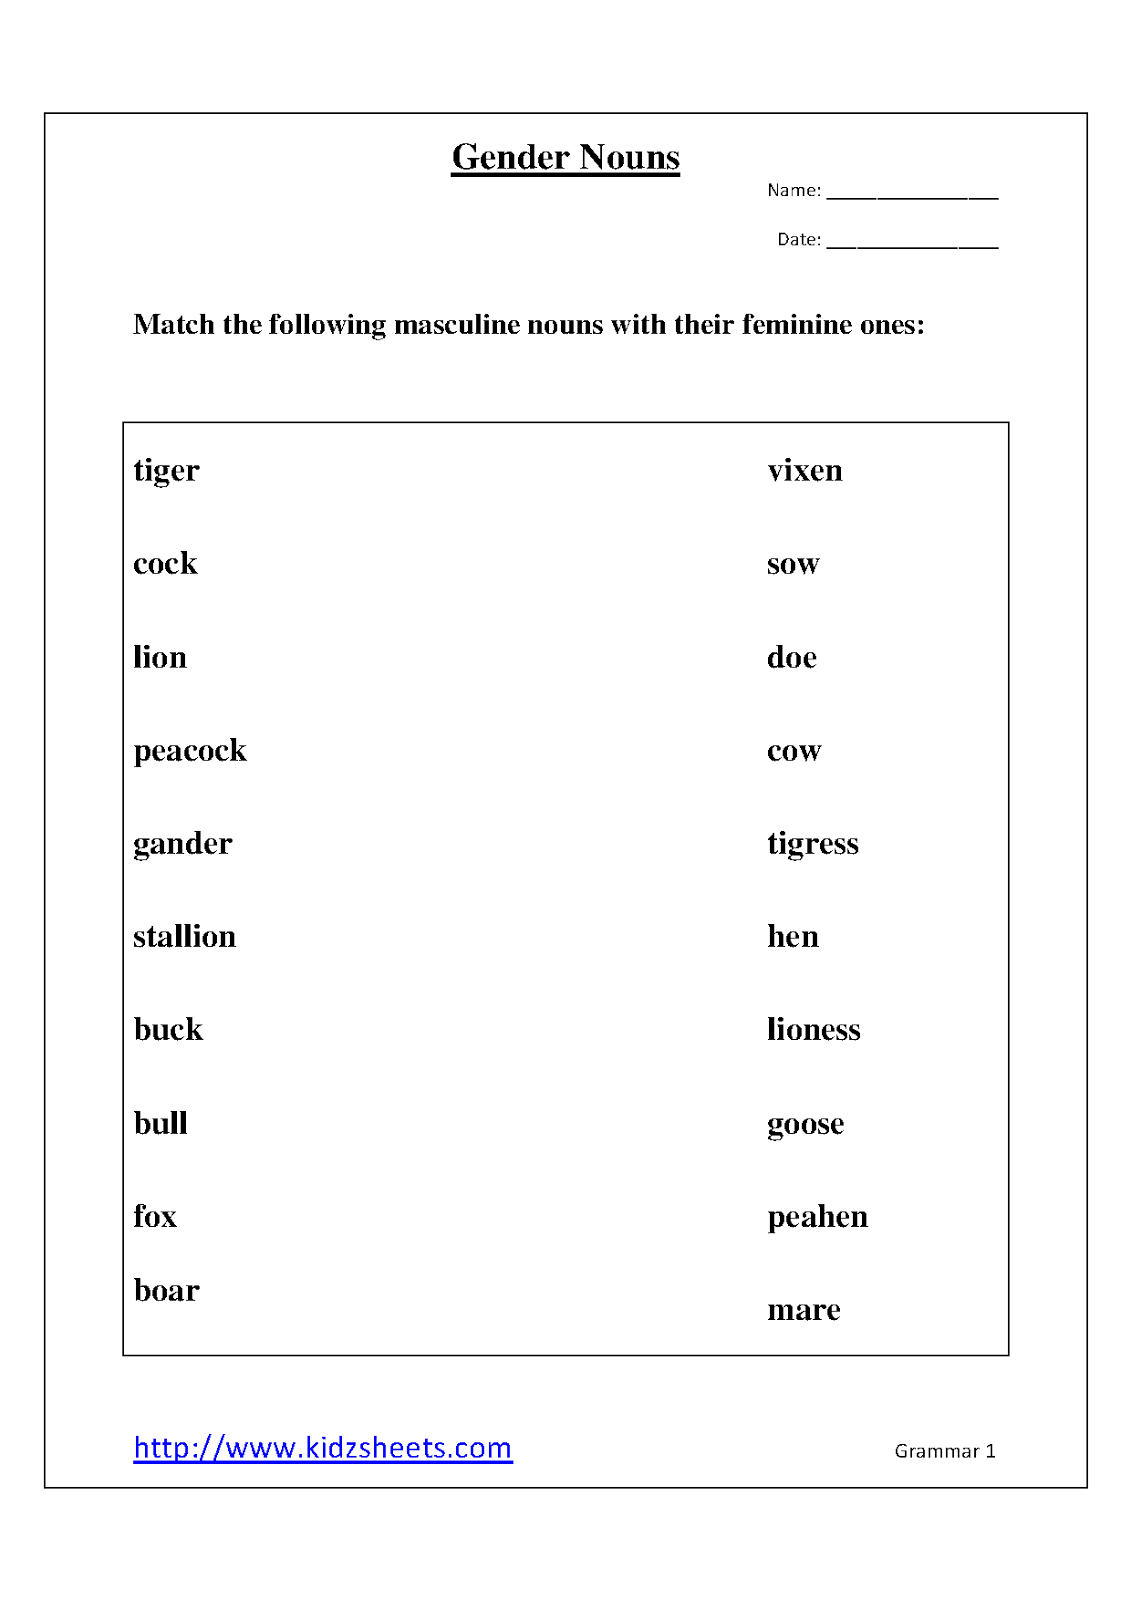 Kidz Worksheets: Gender Nouns Worksheet1 - Free Printable Grammar Worksheets For 2Nd Grade